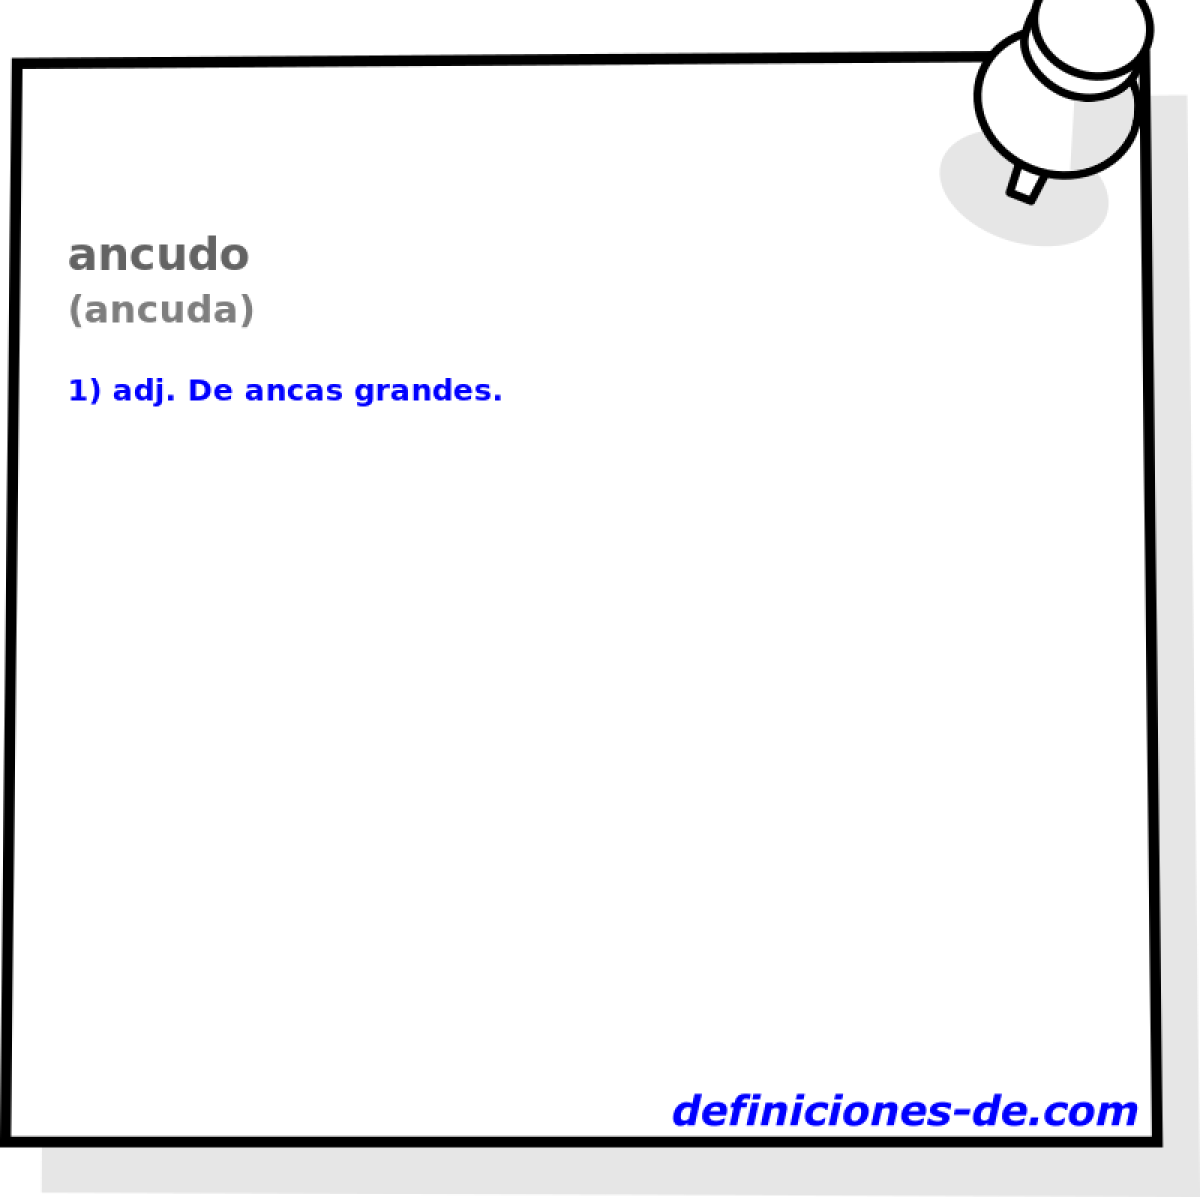 ancudo (ancuda)